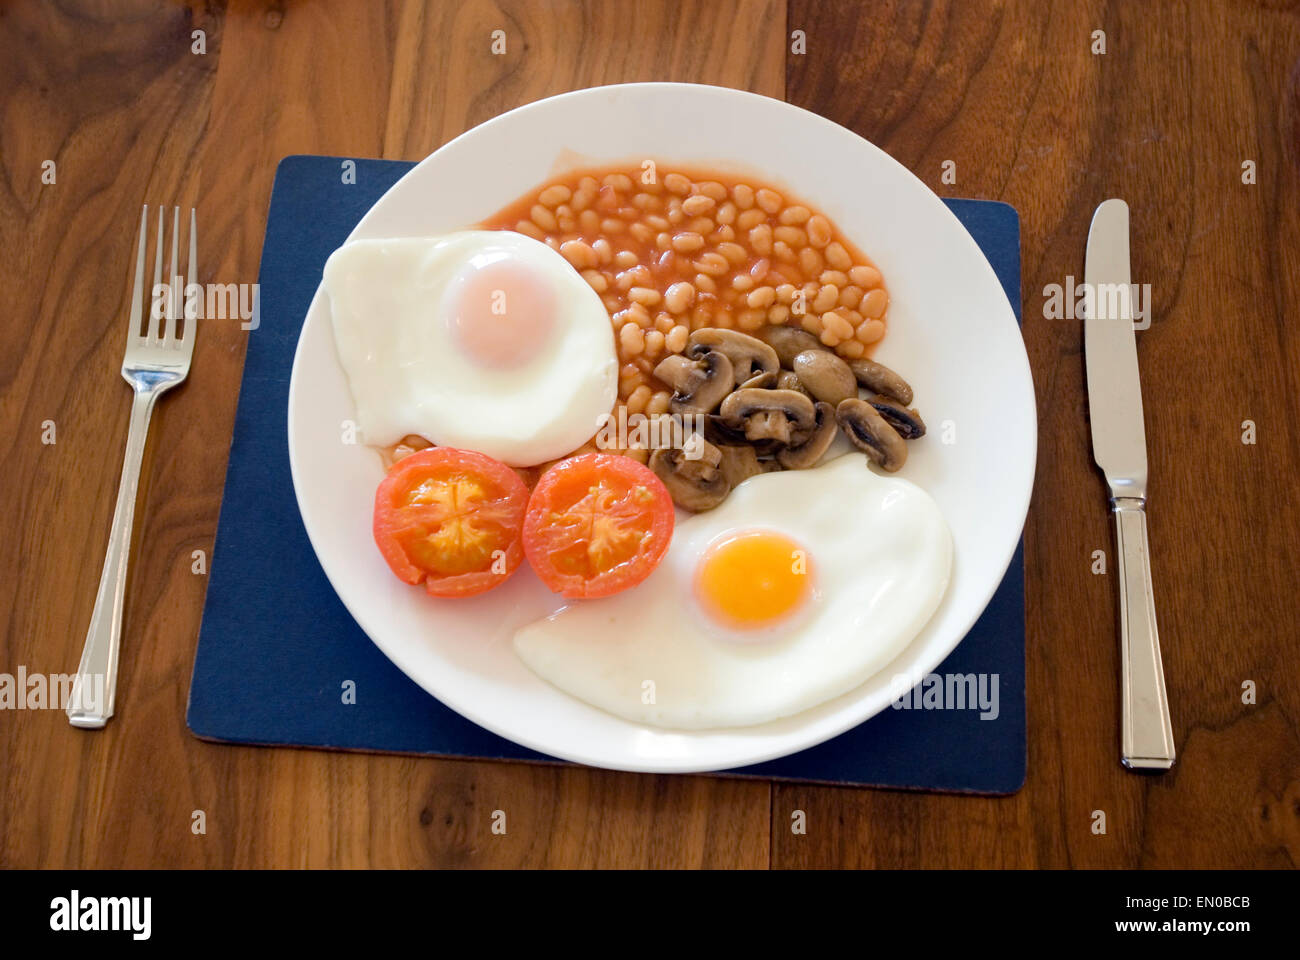 Komplettes englisches Frühstück für Vegetarier, Tomate, Ei, Pilz und Baked Beans, Gabel und Messer auf Holztisch Stockfoto